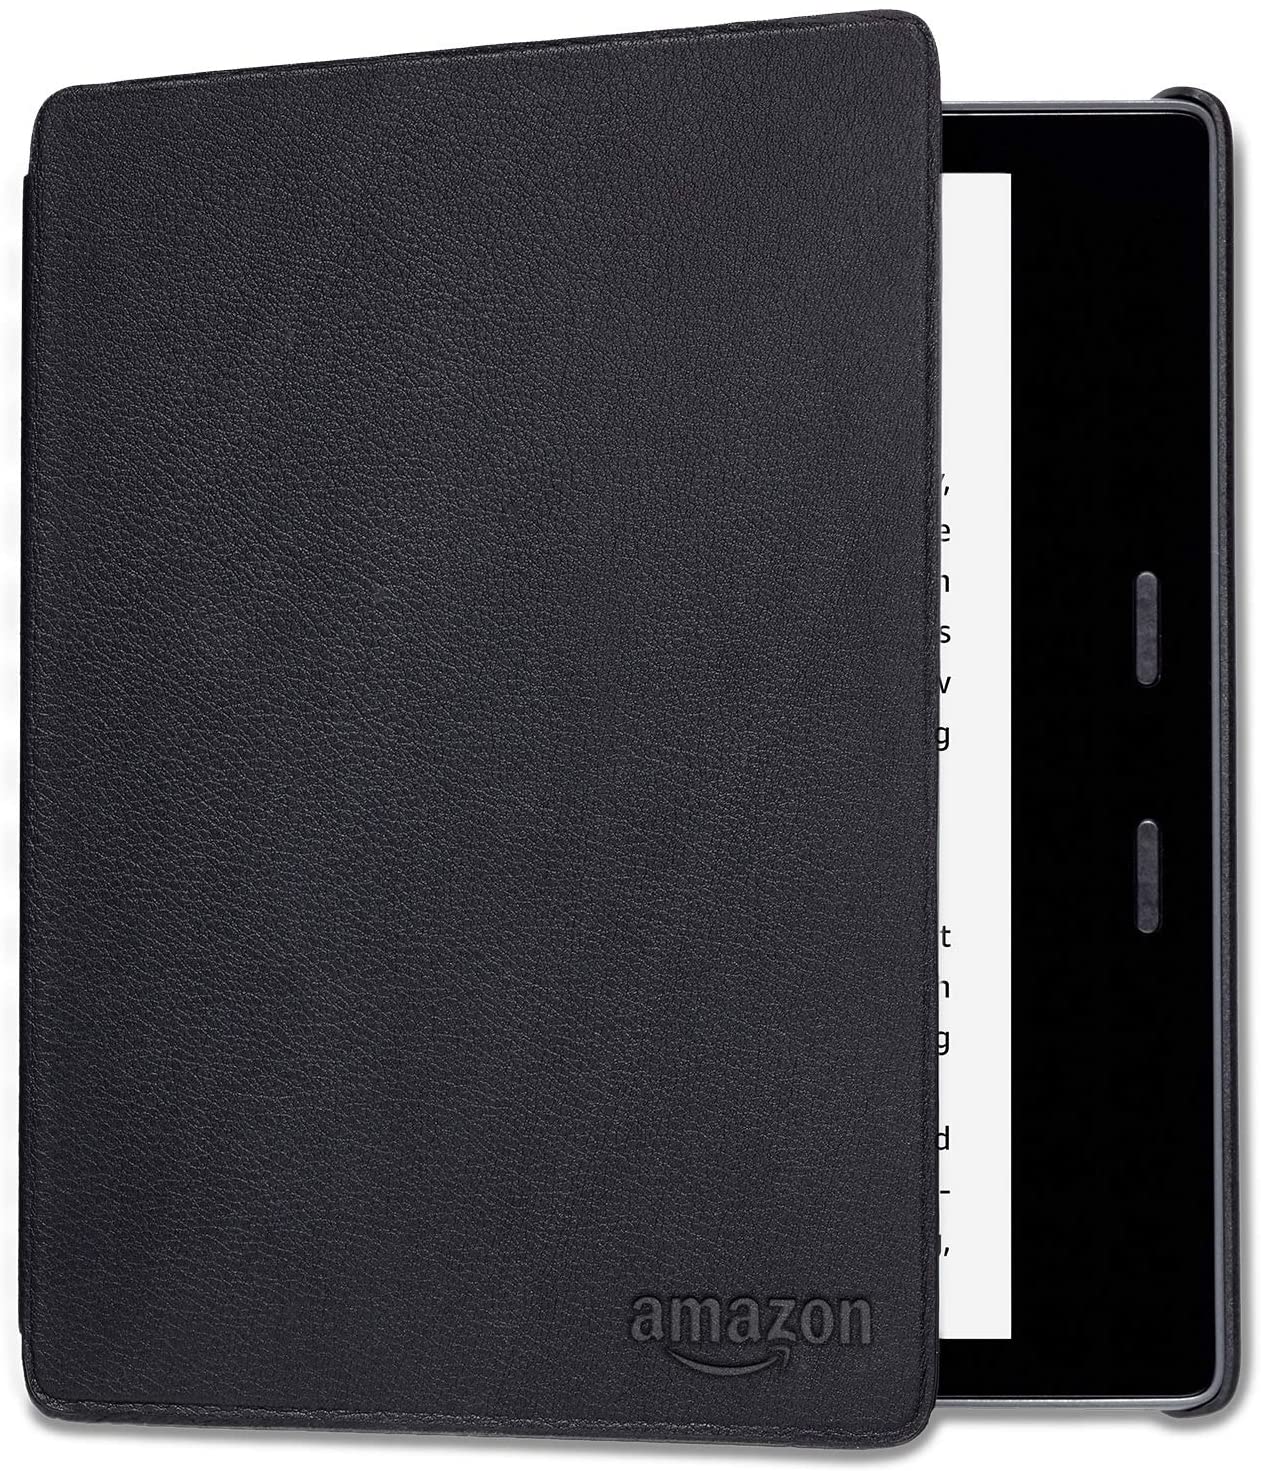 Оригинальная чехол-обложка Amazon Kindle Oasis 9-10 gen. цвет черный, нат.кожа